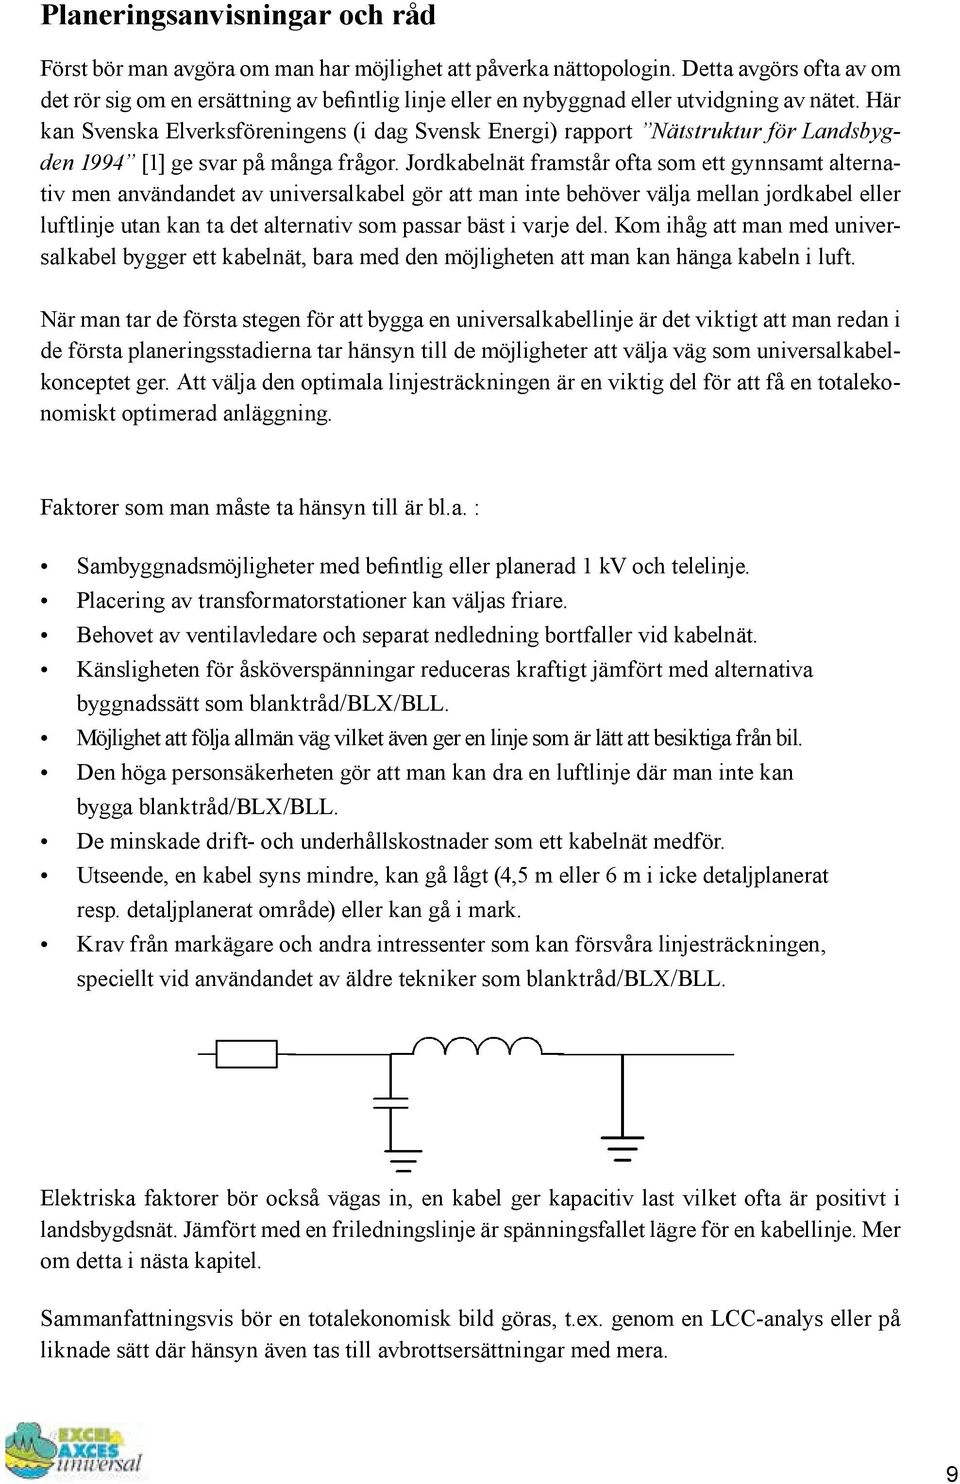 Här kan Svenska Elverksföreningens (i dag Svensk Energi) rapport Nätstruktur för Landsbygden 1994 [1] ge svar på många frågor.